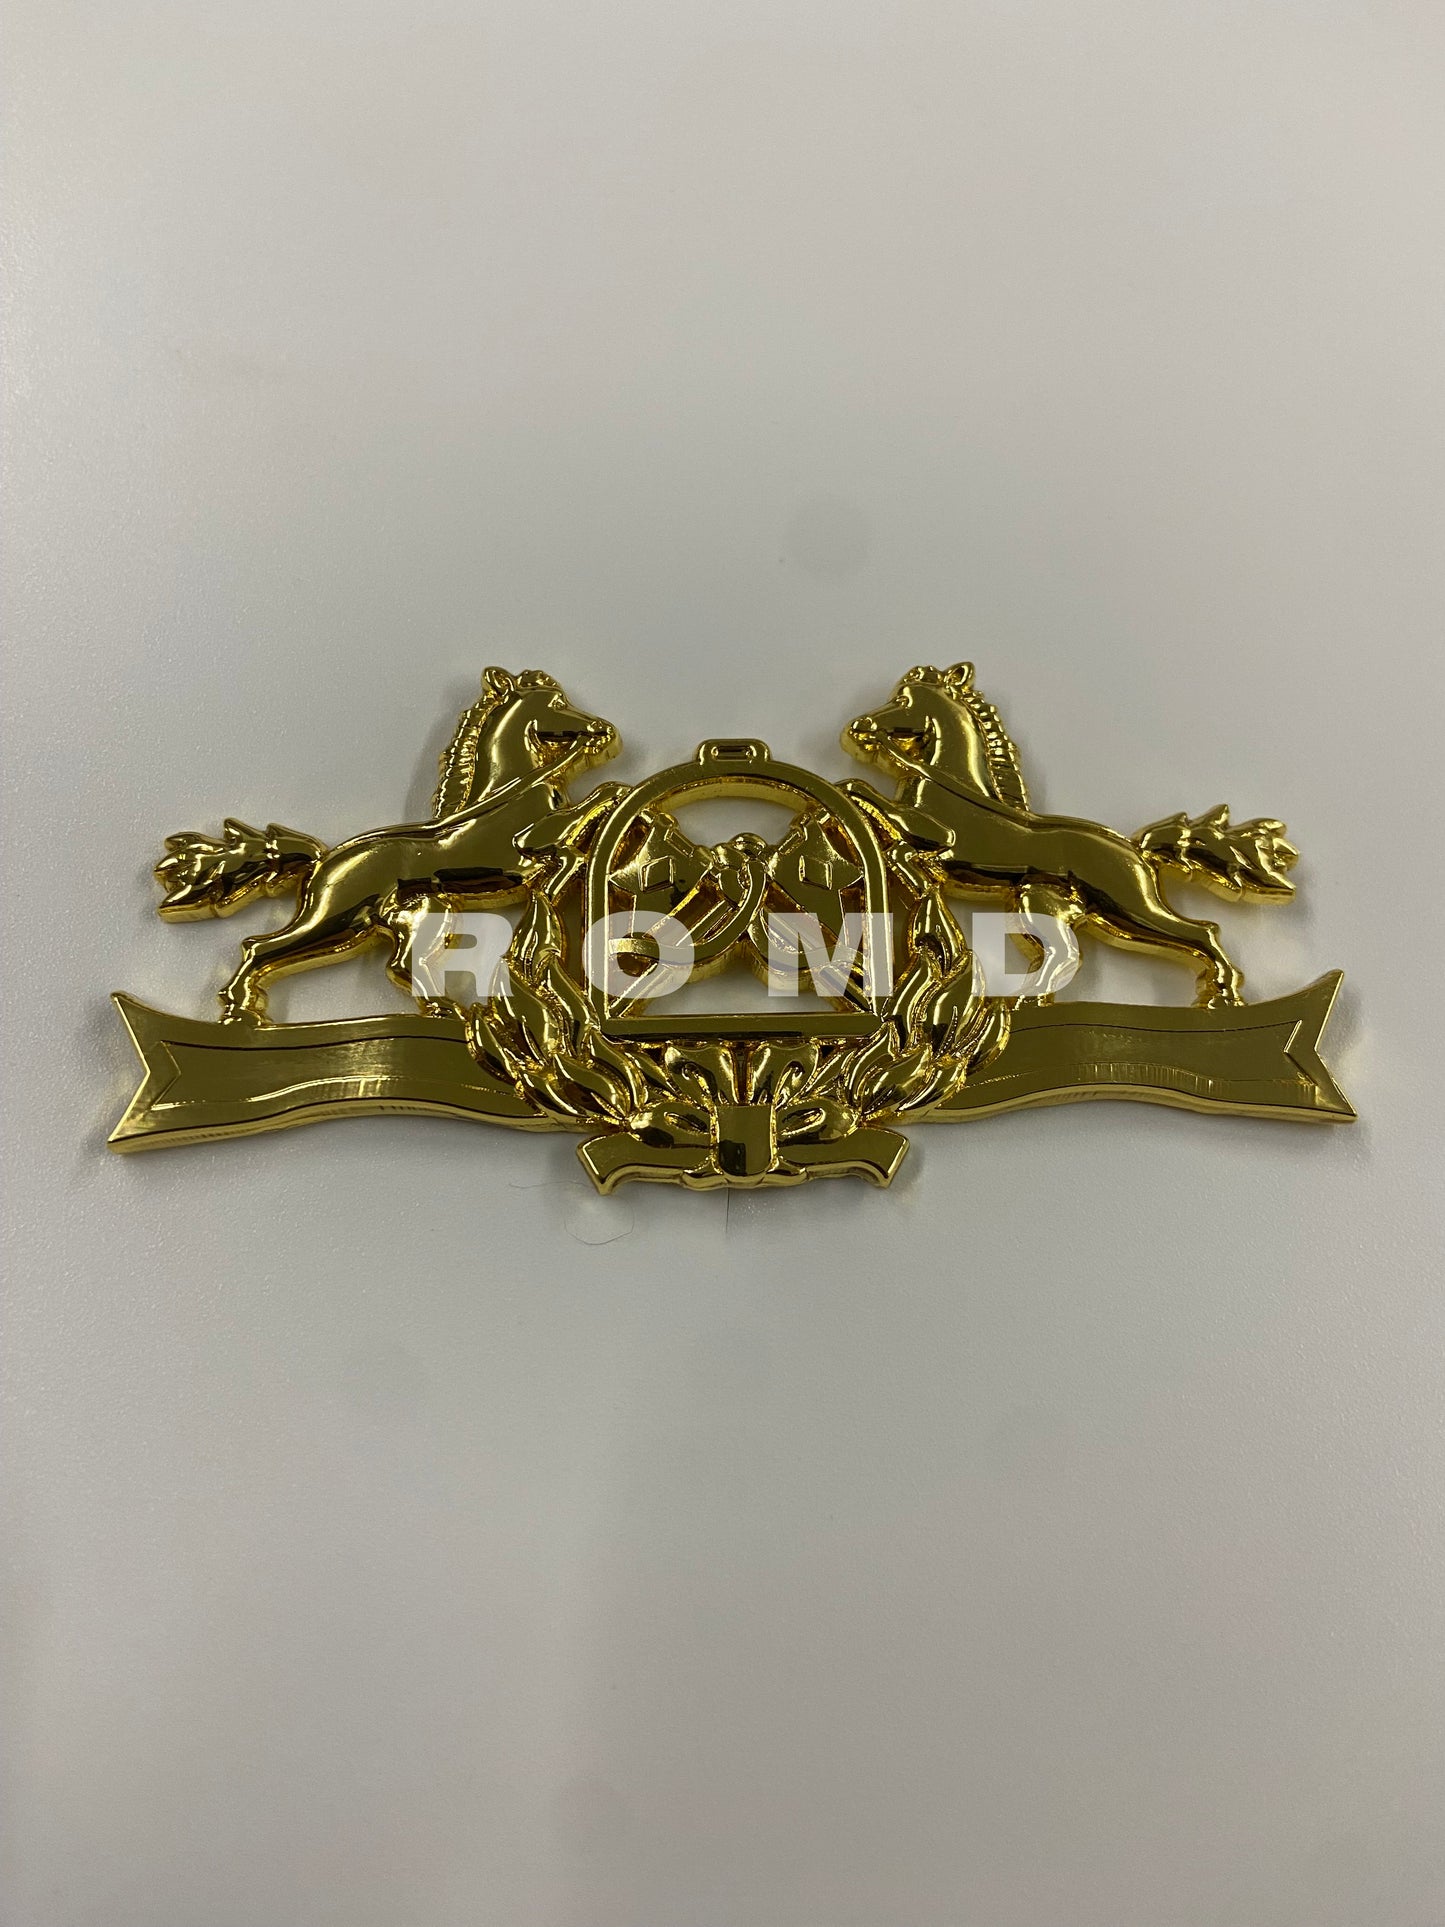 Distintivo metálico da Escola de Equitação do Exército - EsEqEx - 3D ALTO-RELEVO